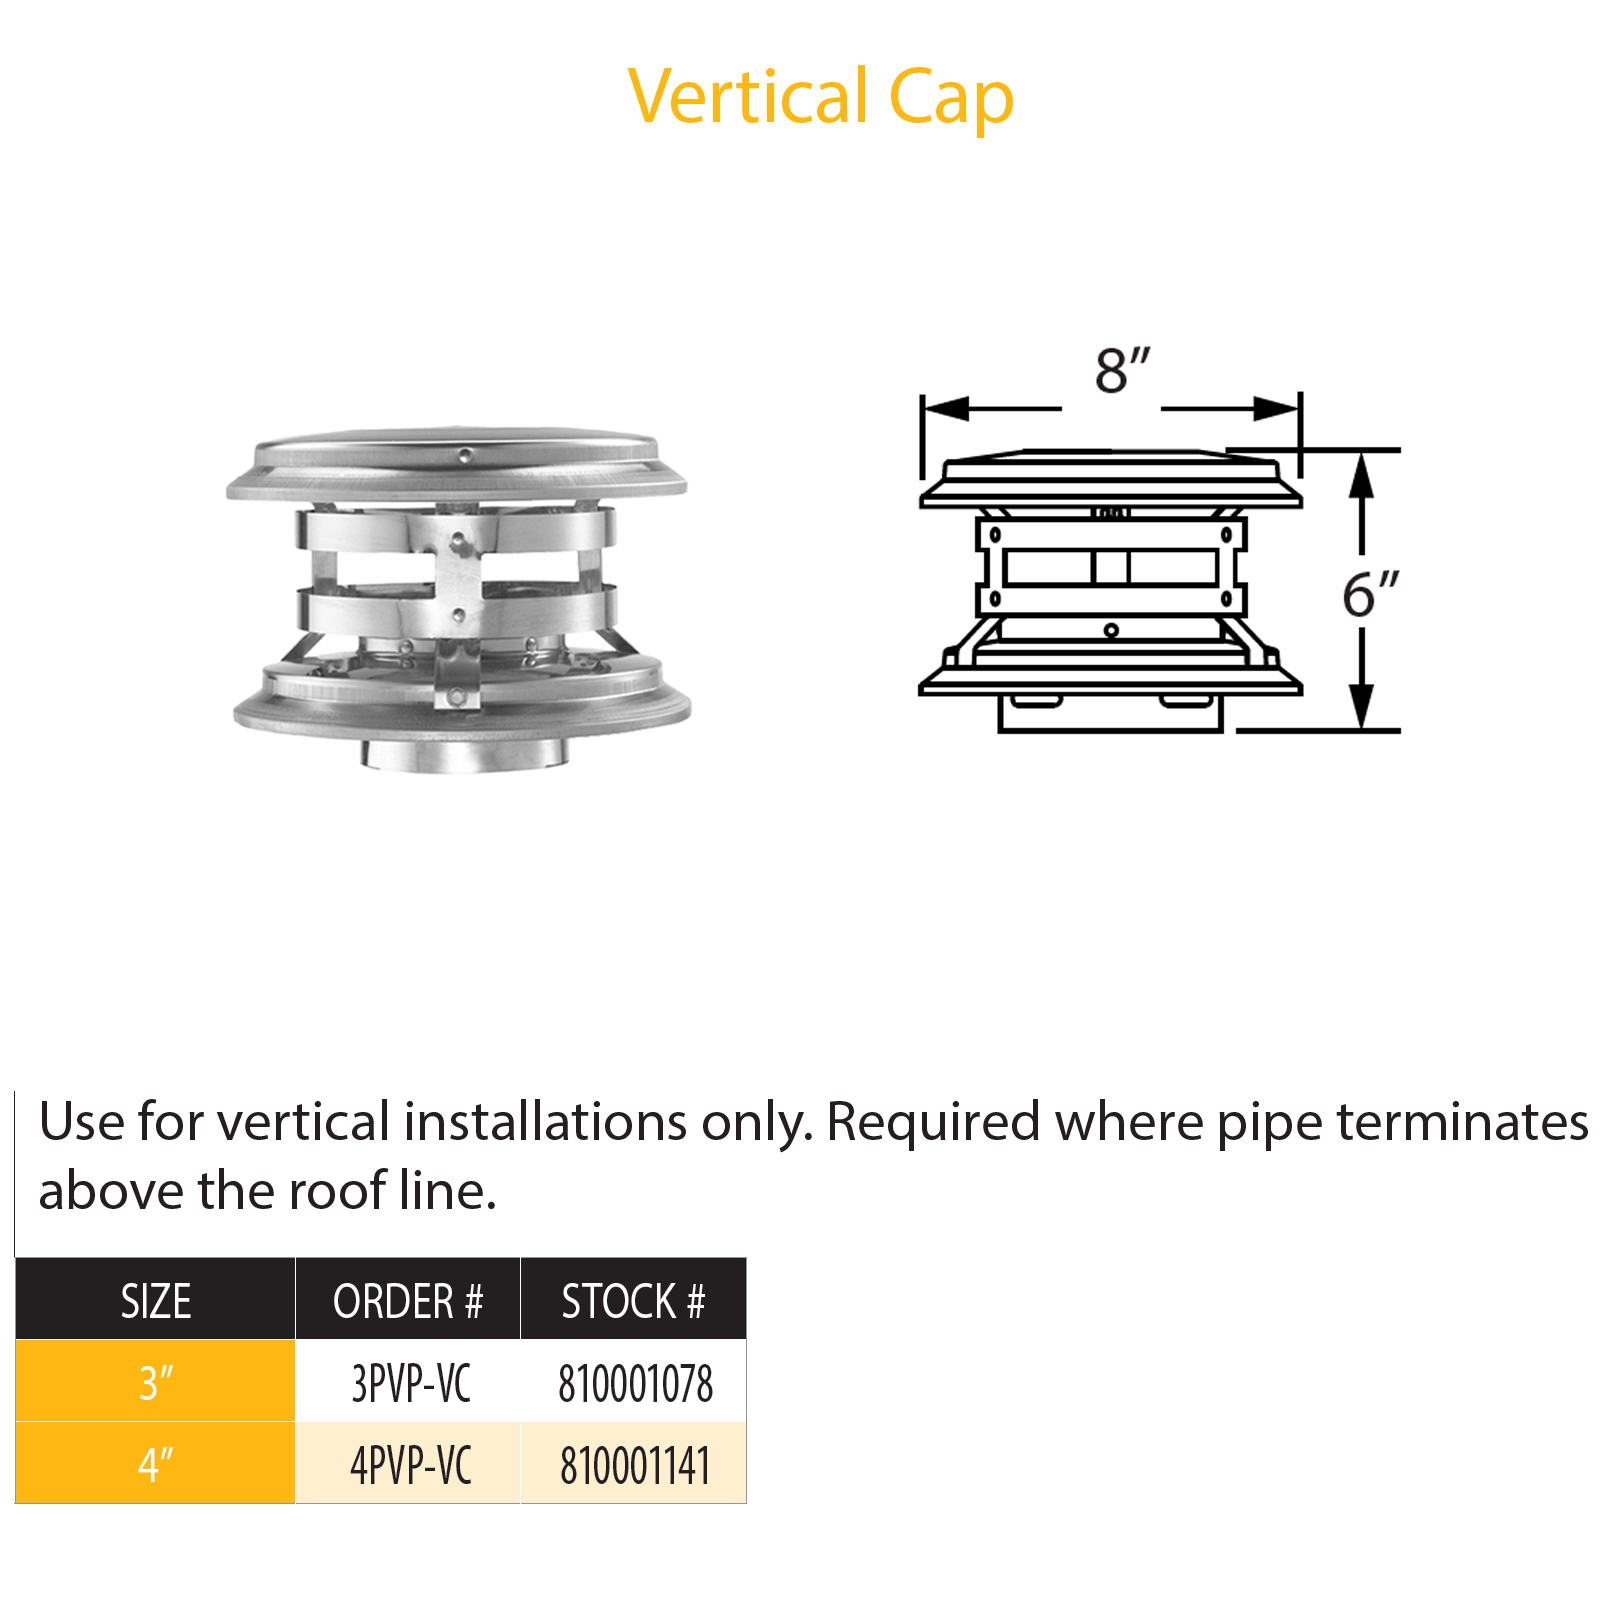 DuraVent Pellet Vent Pro Vertical Cap | 4PVP-VC